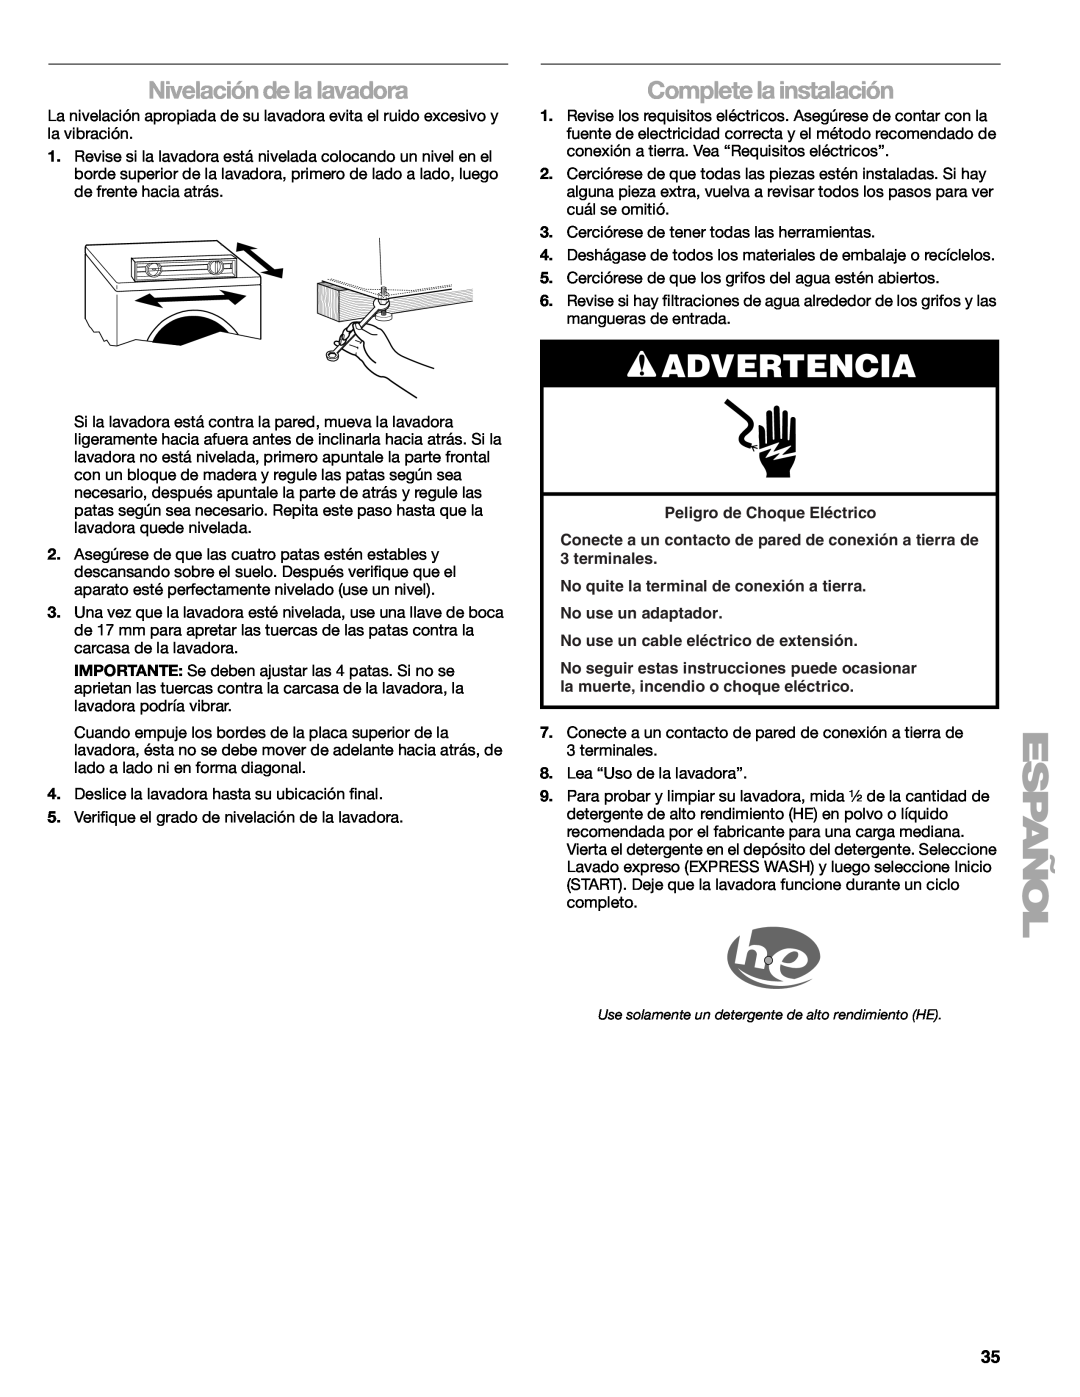 Kenmore W10133487A manual Nivelación de la lavadora, Complete la instalación, Advertencia, Peligro de Choque Eléctrico 